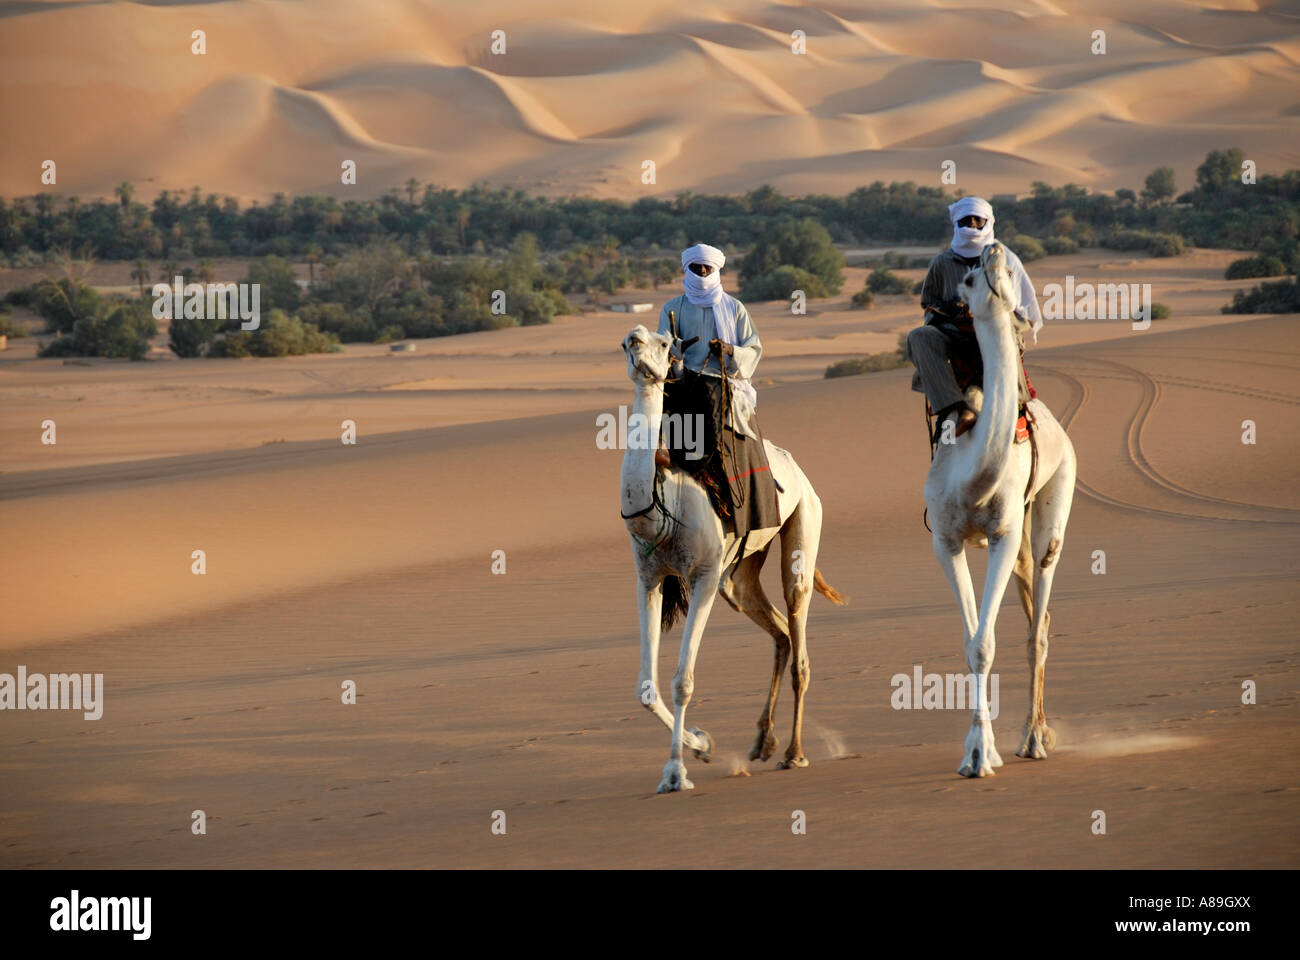 Zwei Tuareg fahren elegant auf ihren Kamelen in der Wüste Mandara, libysche Wüste, Sahara, Libyen Stockfoto